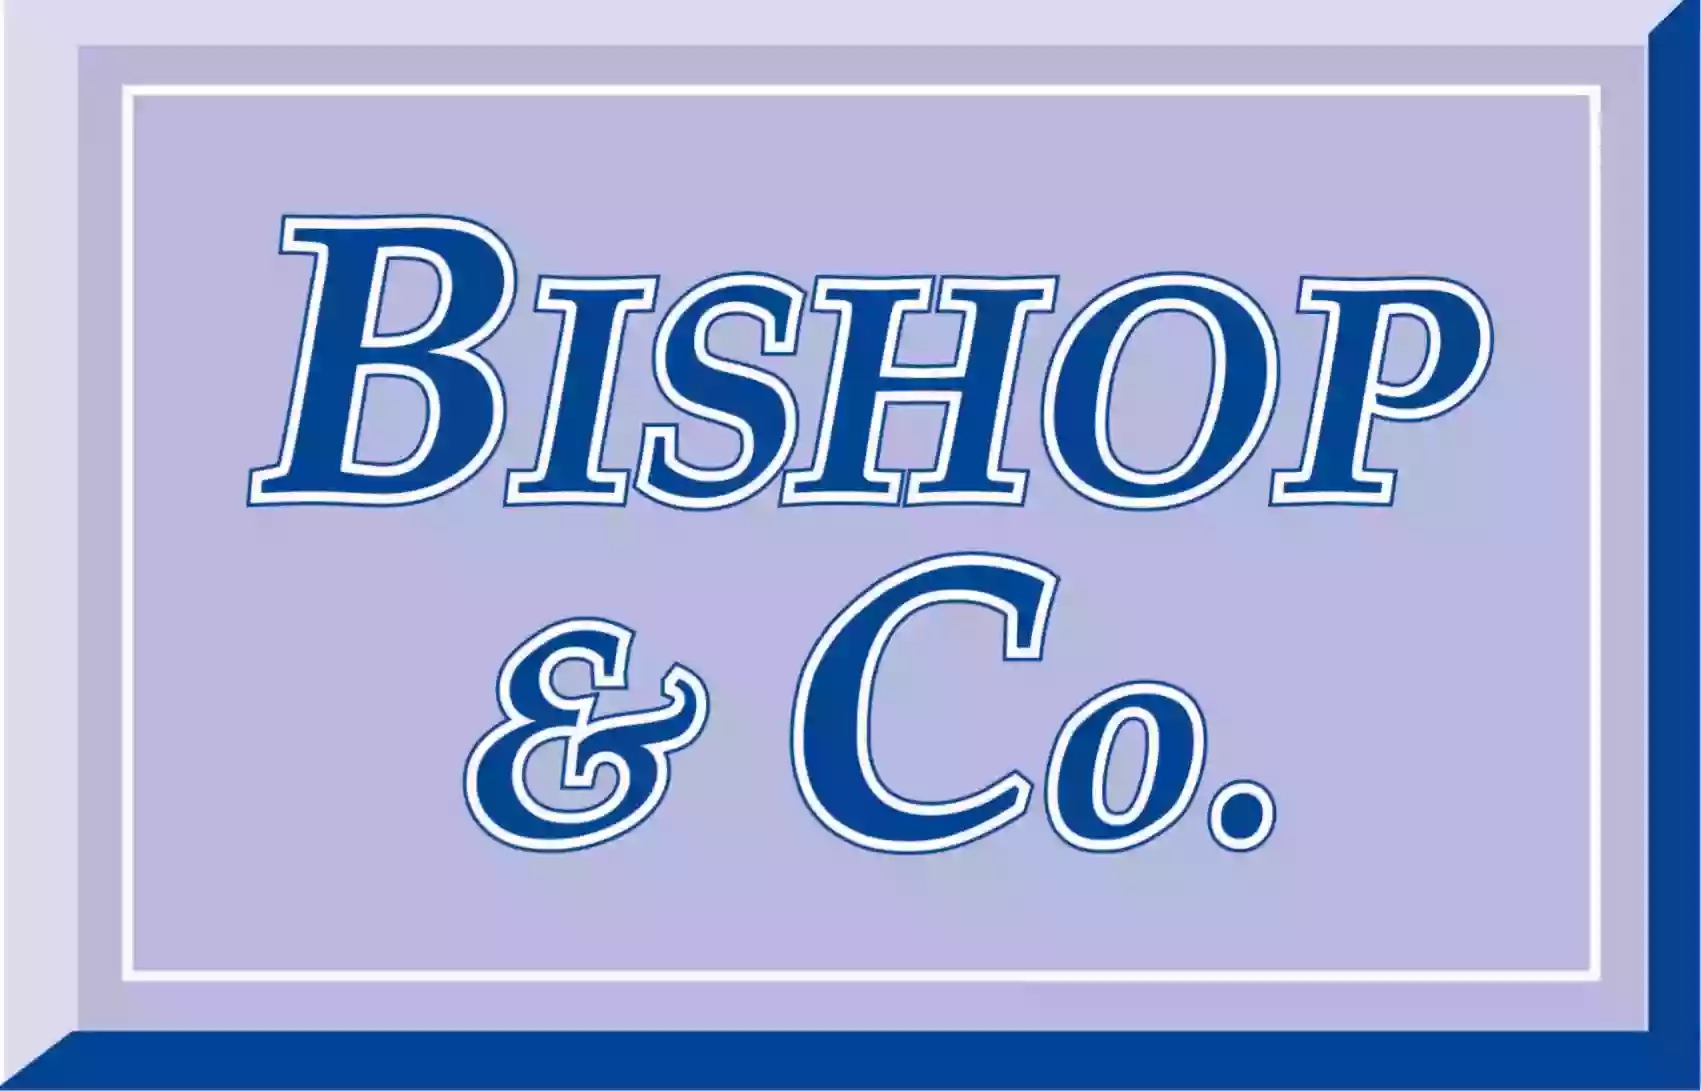 Bishop & Co